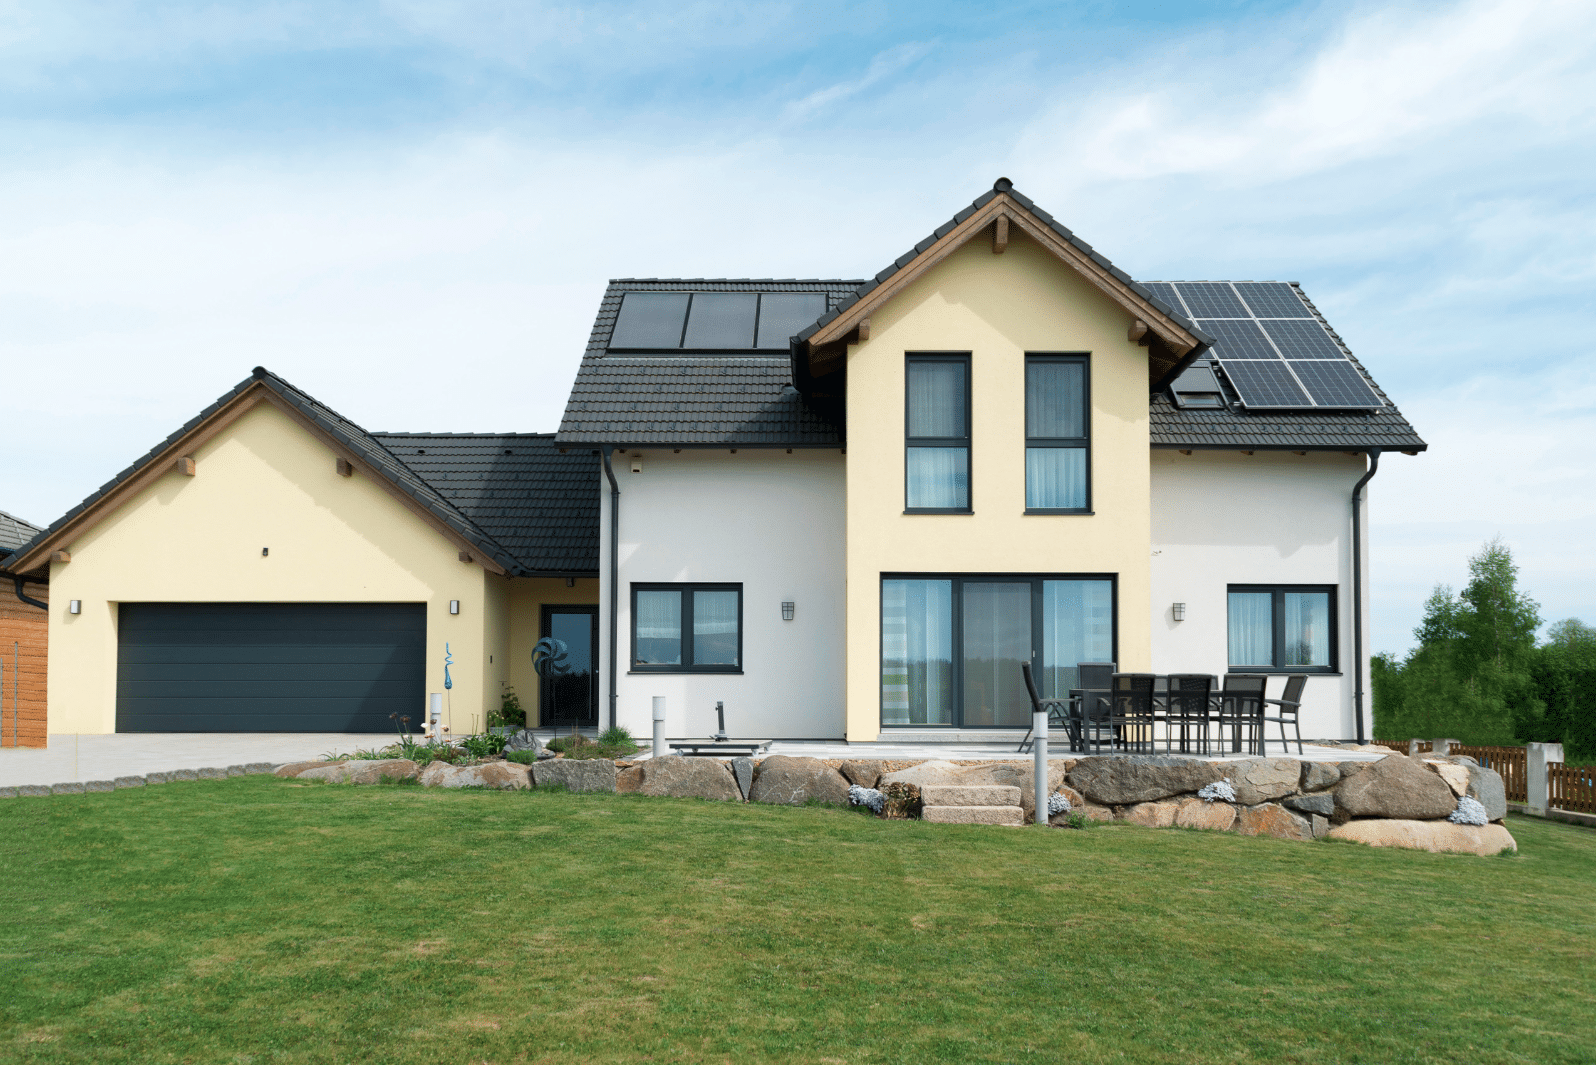 HARTL HAUS Holzindustrie zeigt ein modernes Fertighaus mit Zwerchdach und Solarkollektoren, Doppelgarage sowie Terrasse.